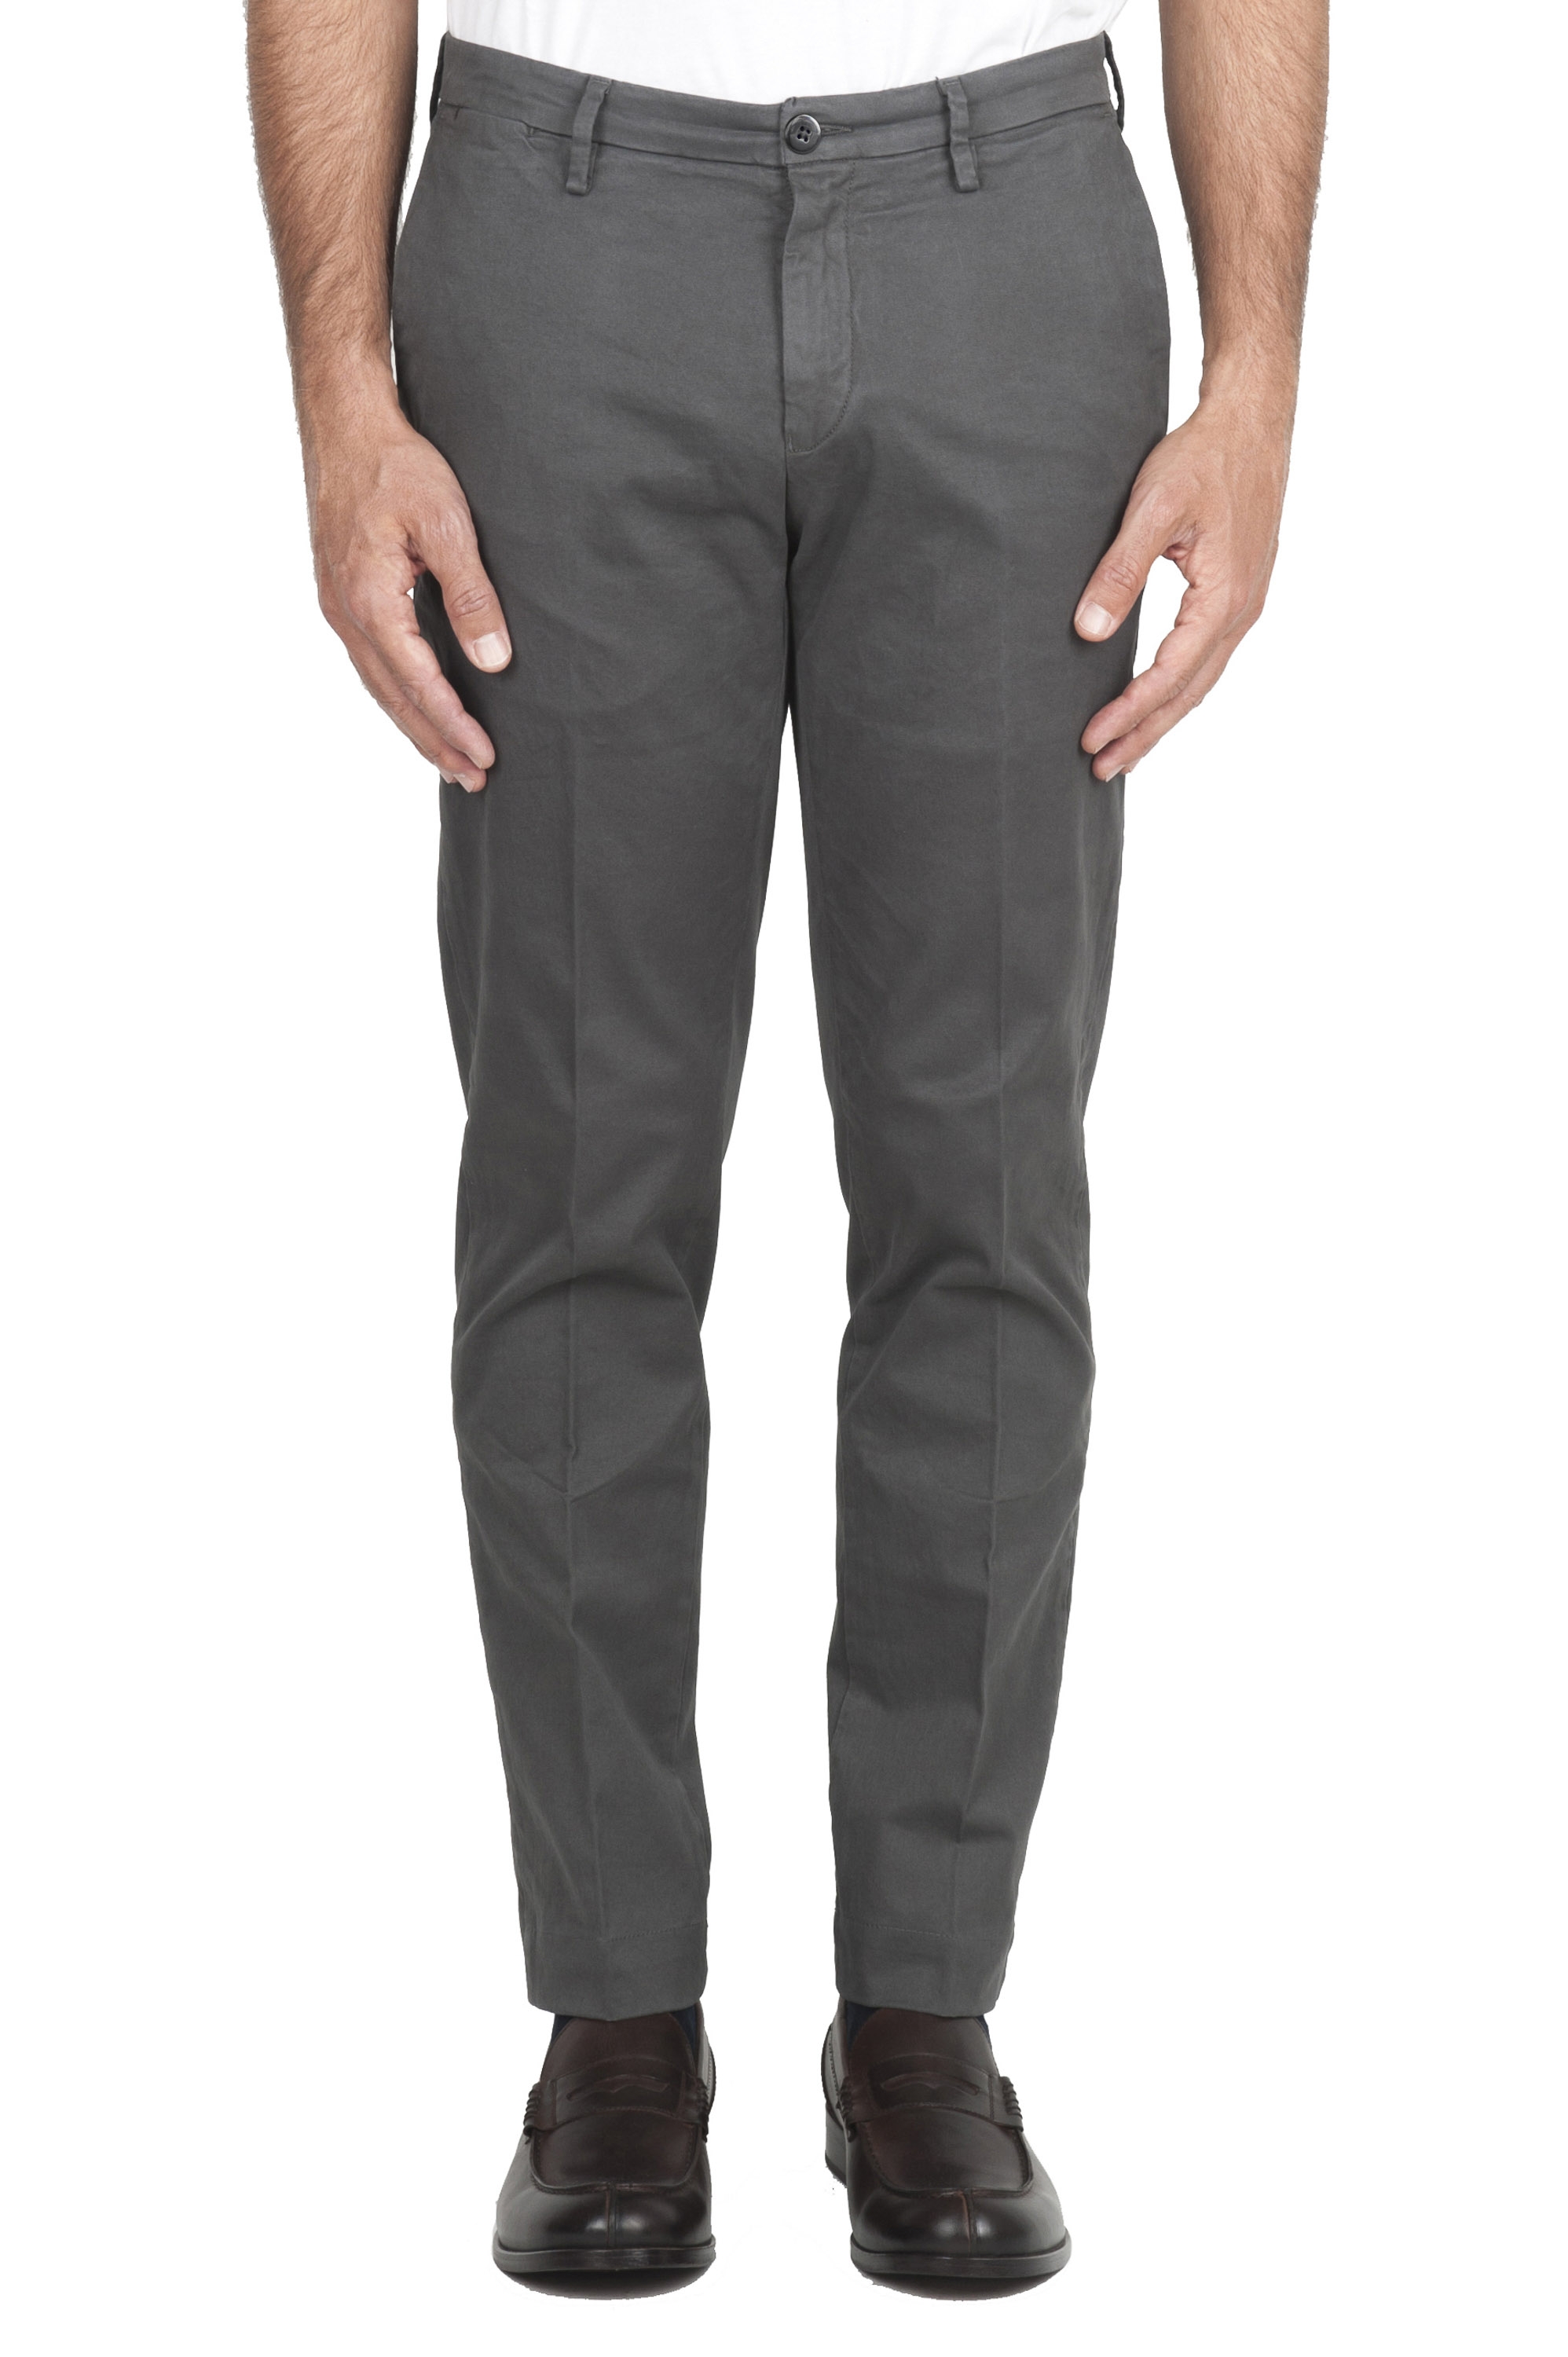 SBU 02921_2020AW Pantalones chinos clásicos en algodón elástico gris 01